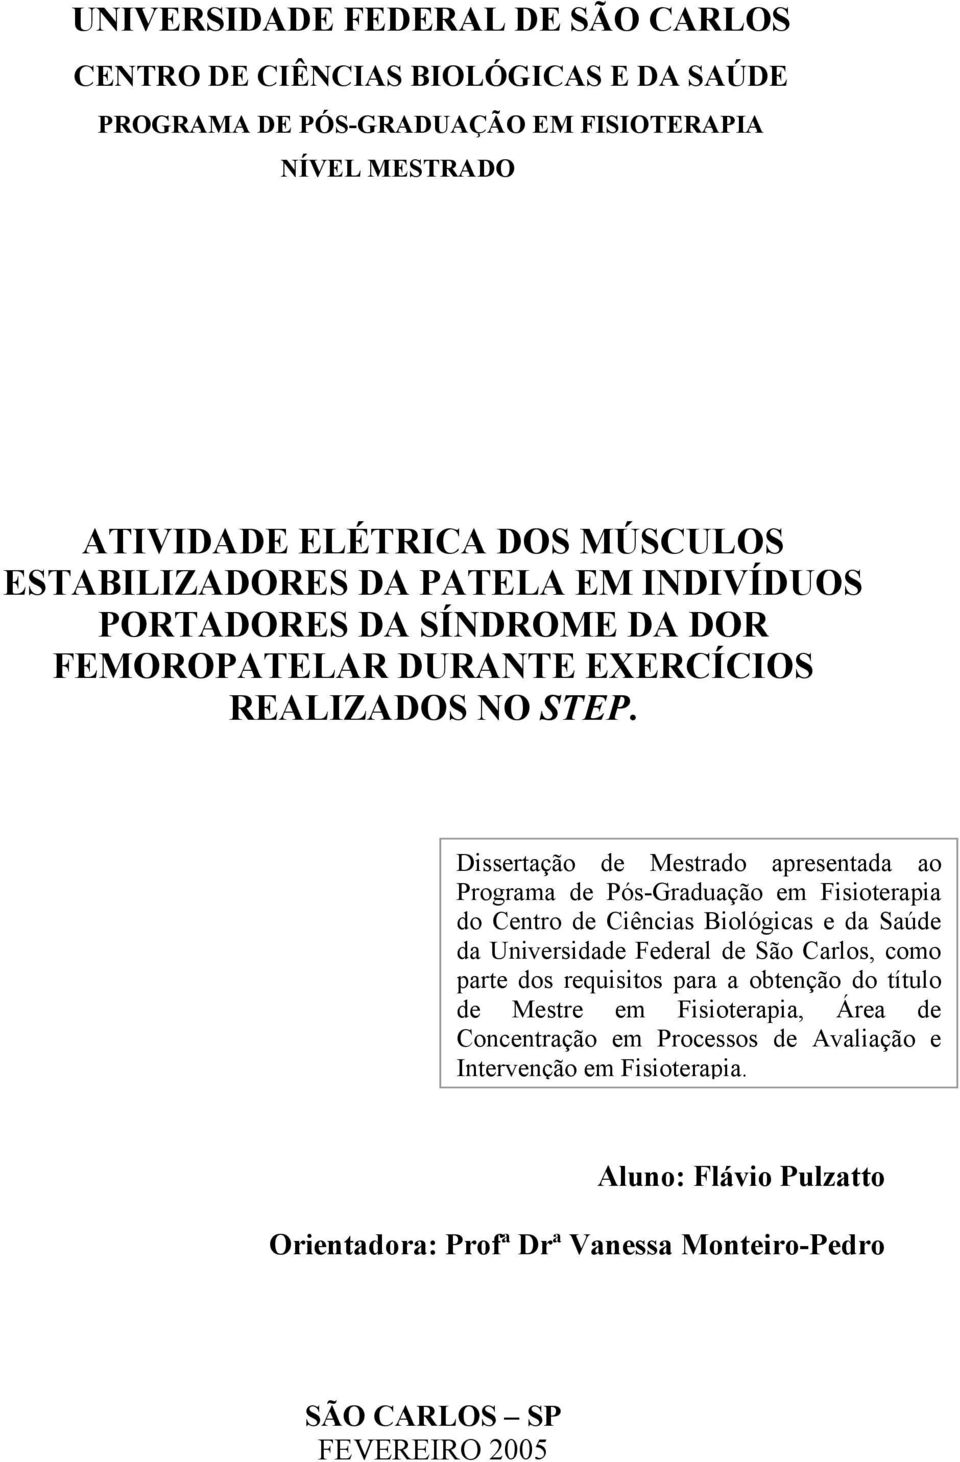 Dissertação de Mestrado apresentada ao Programa de Pós-Graduação em Fisioterapia do Centro de Ciências Biológicas e da Saúde da Universidade Federal de São Carlos, como parte